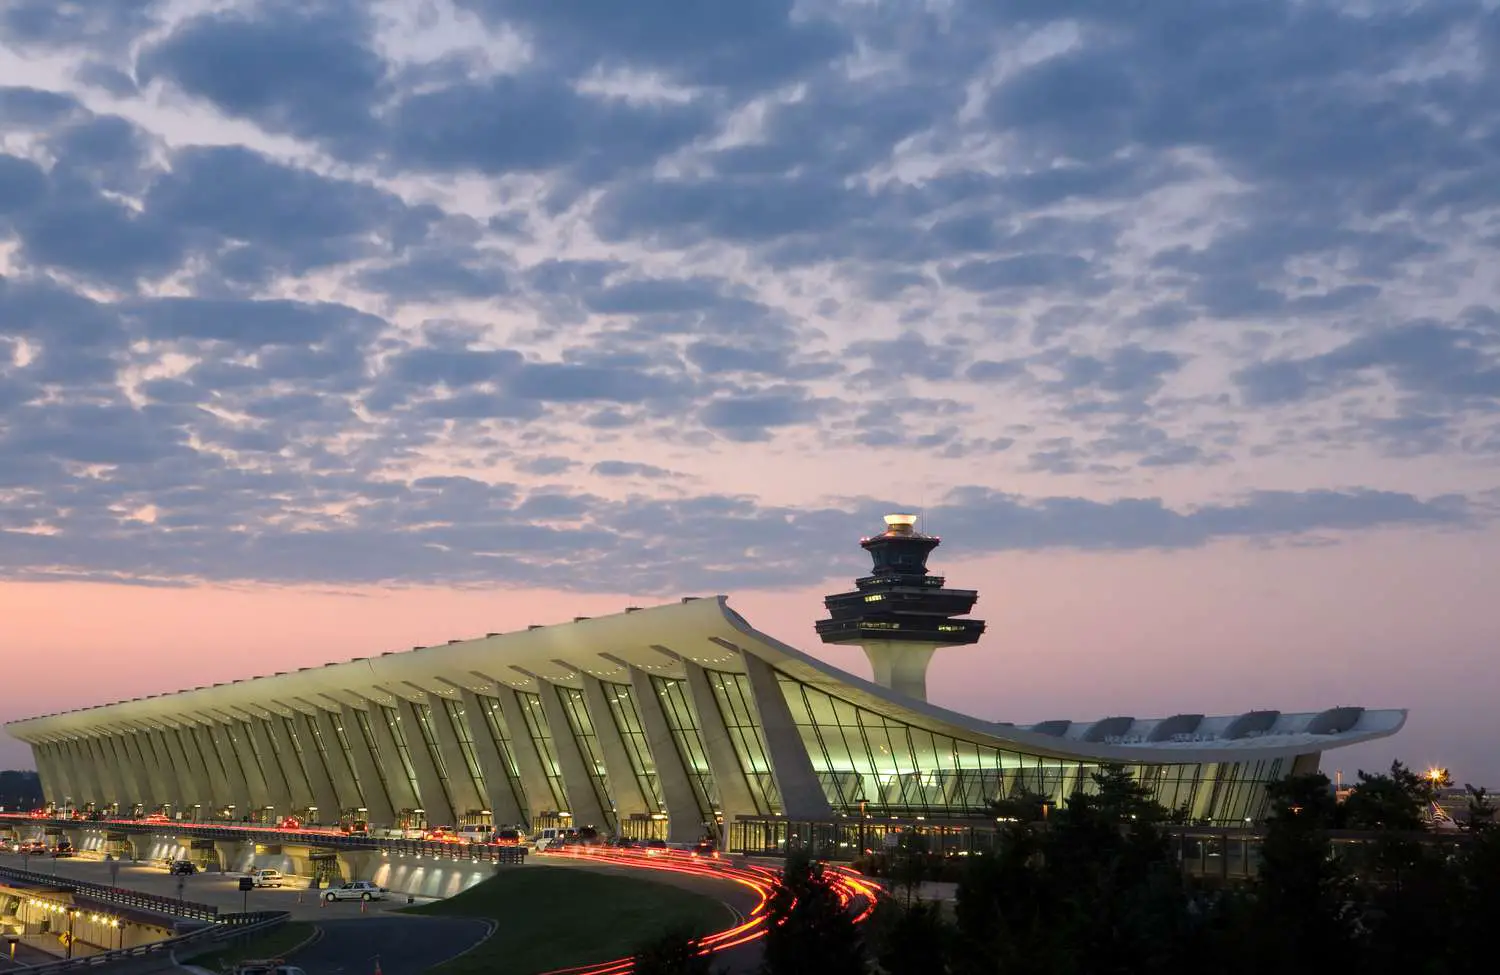 ¿Cómo llego desde Union Station en Washington al Aeropuerto Internacional Dulles?